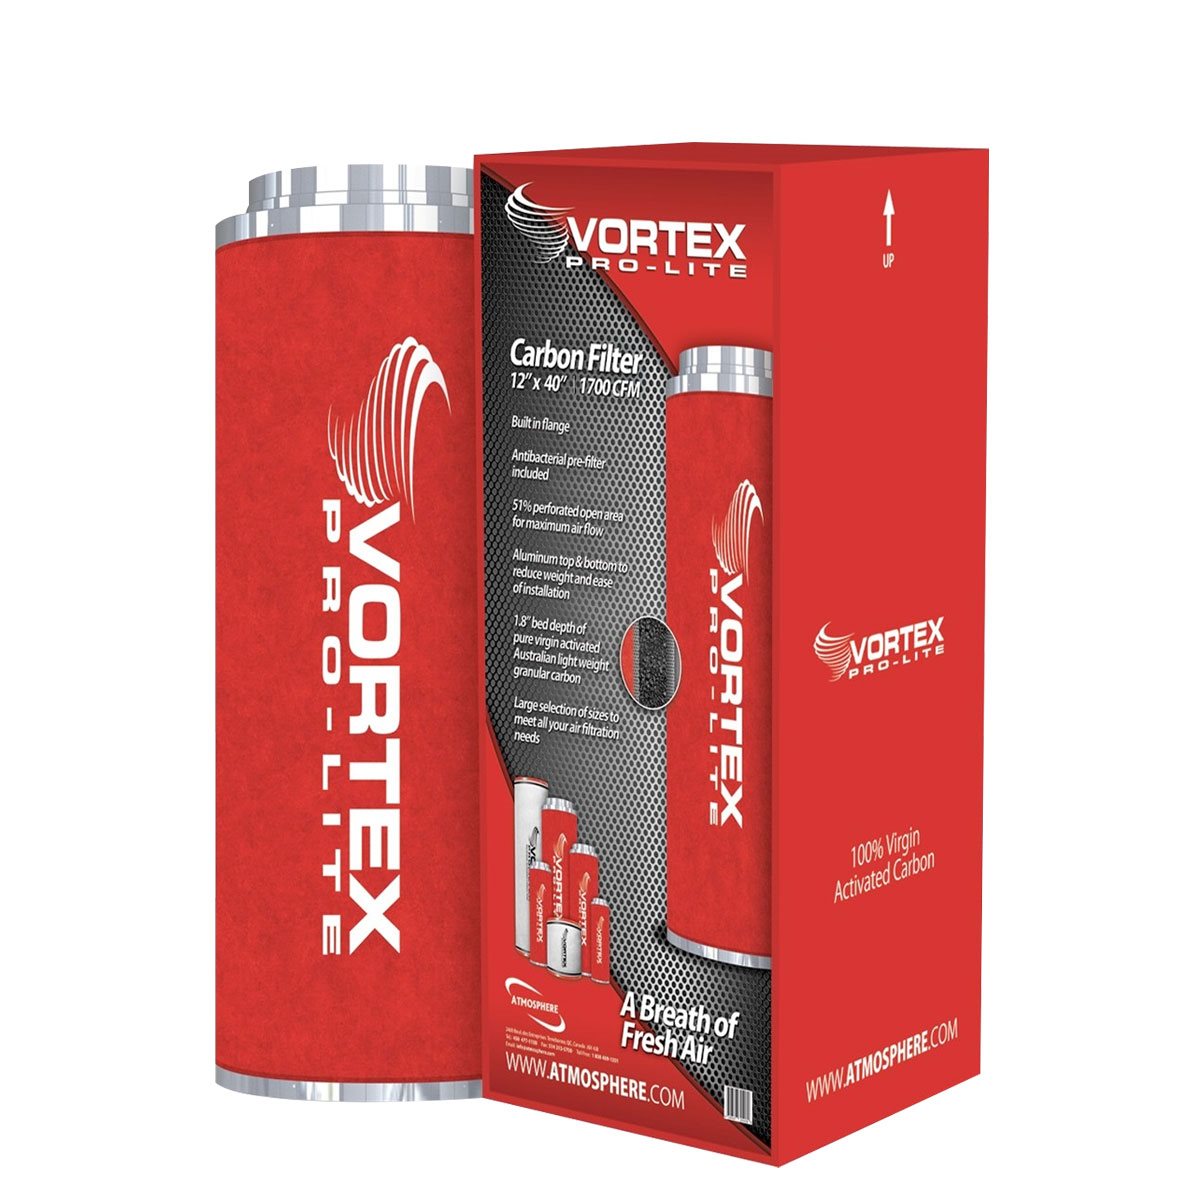 Vortex Pro-Lite Filter 8" x 40" (950 CFM)